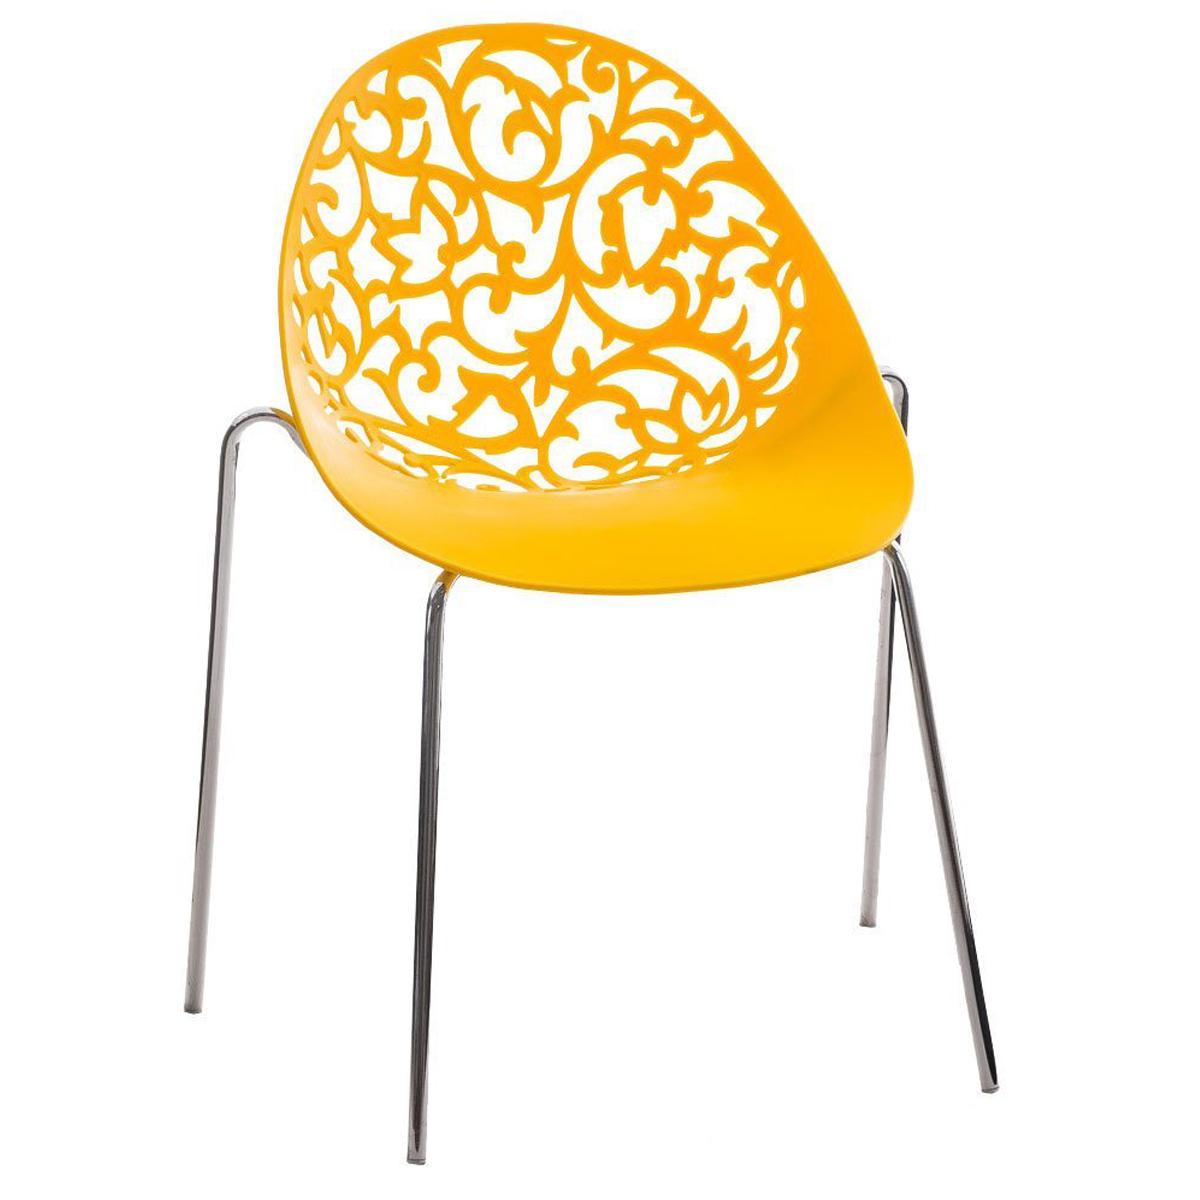 Cadeira de Visita DENALI, Empilhável, Estrutura Metálica, Em Cor Amarelo